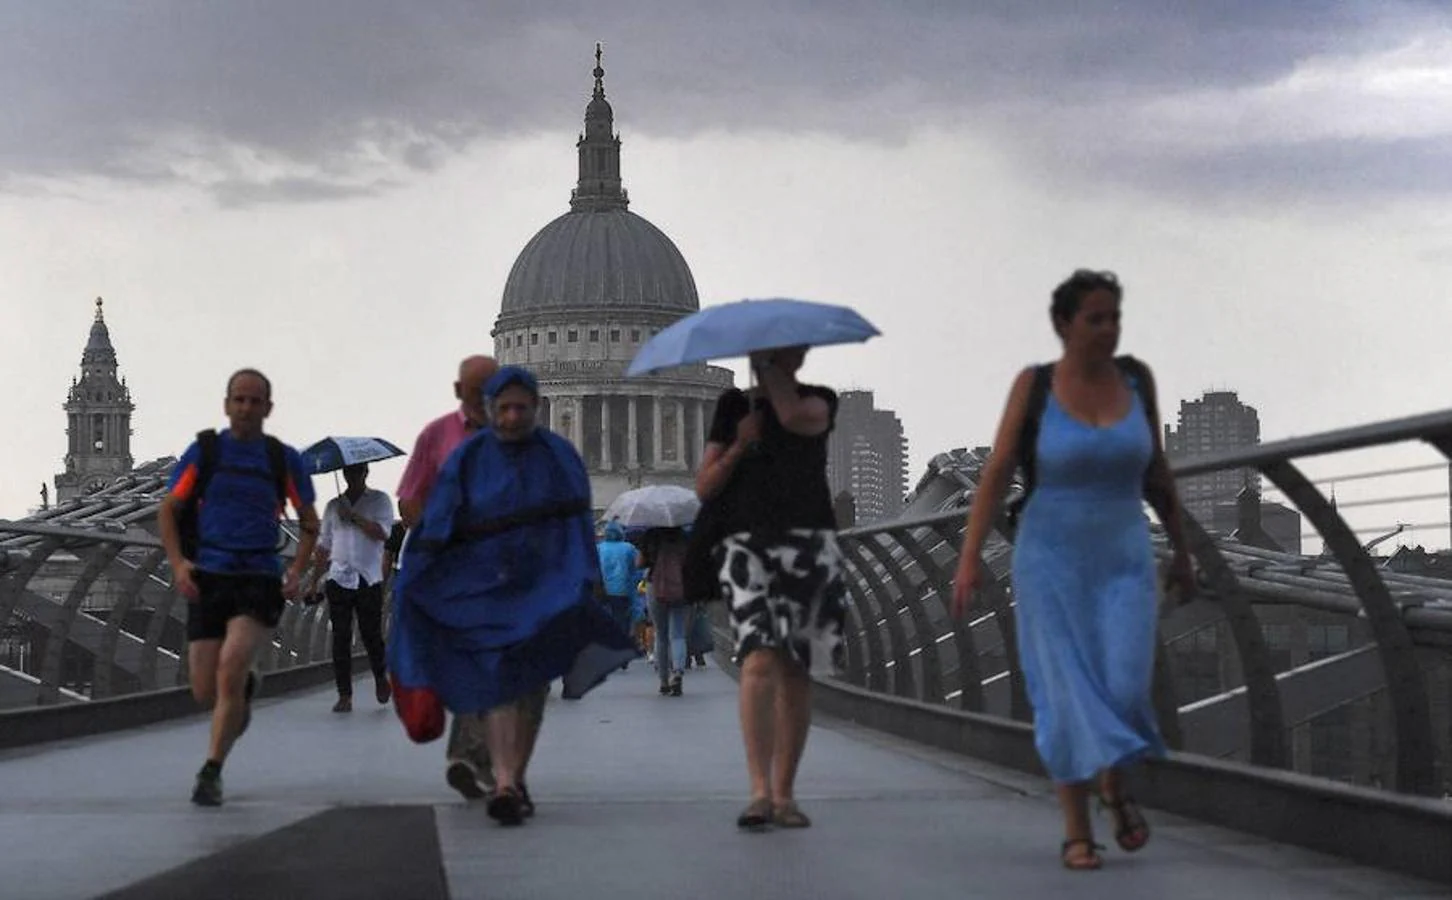 El calor trae tormentas a Londres. El puente Millenium mientras las nubes se cierran sobre la cúpula de la Catedral de San Pablo en Londres. La ola de calor por la que atraviesa Reino Unido amenaza con generar fuertes tormentas.